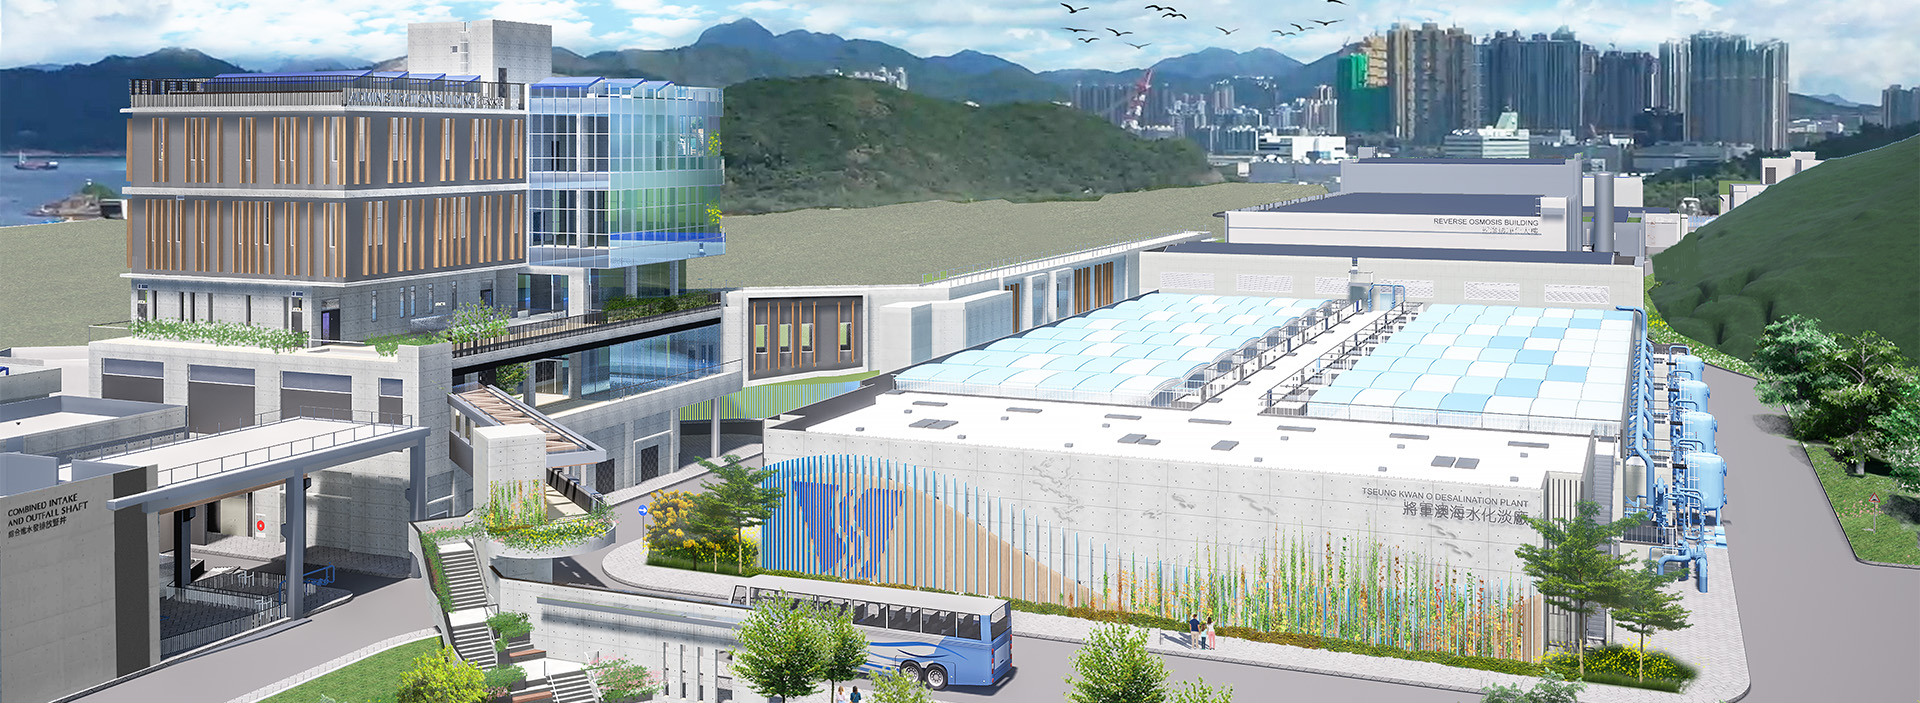 bnr-Tseung-Kwan-O-Desalination-Plant